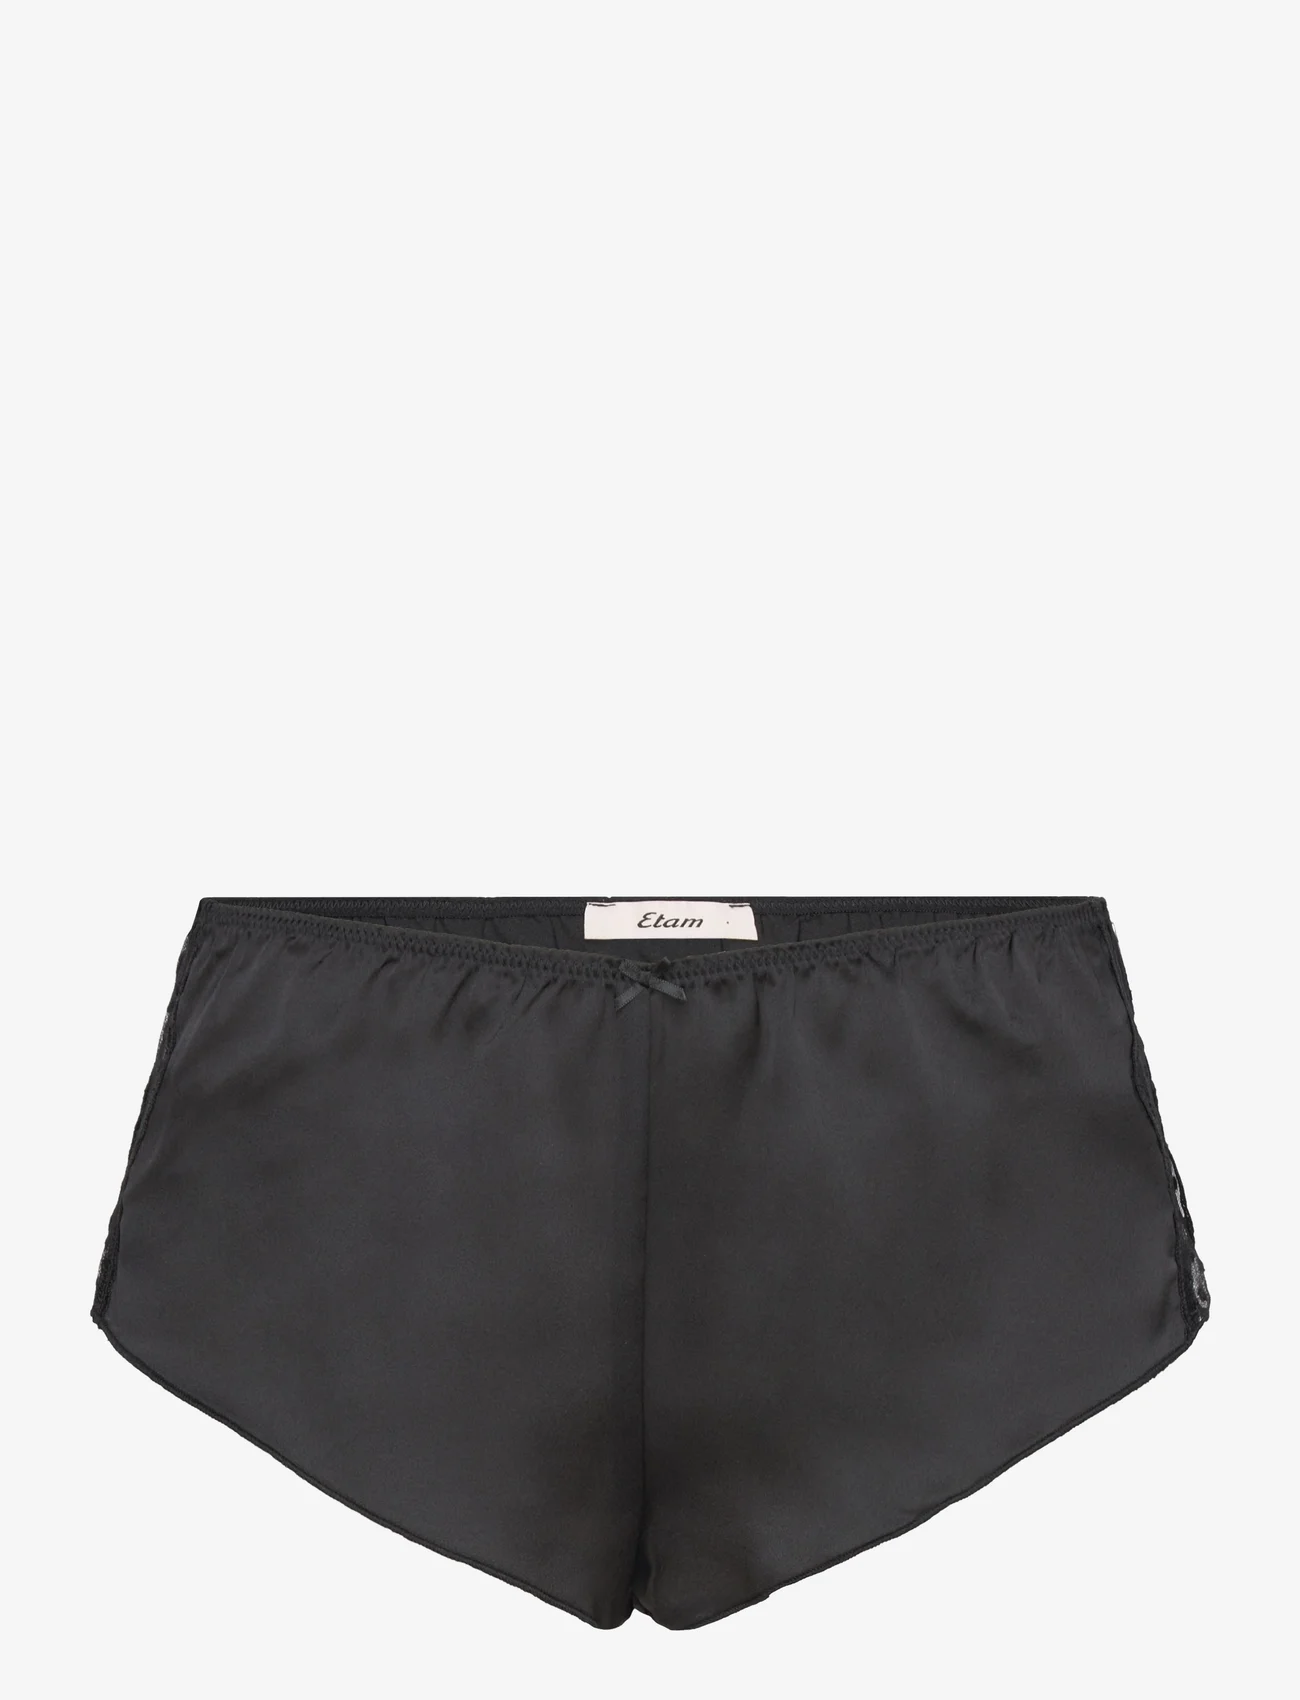 Etam - Emerveille Short Pyjama Bottom - mažiausios kainos - black - 0